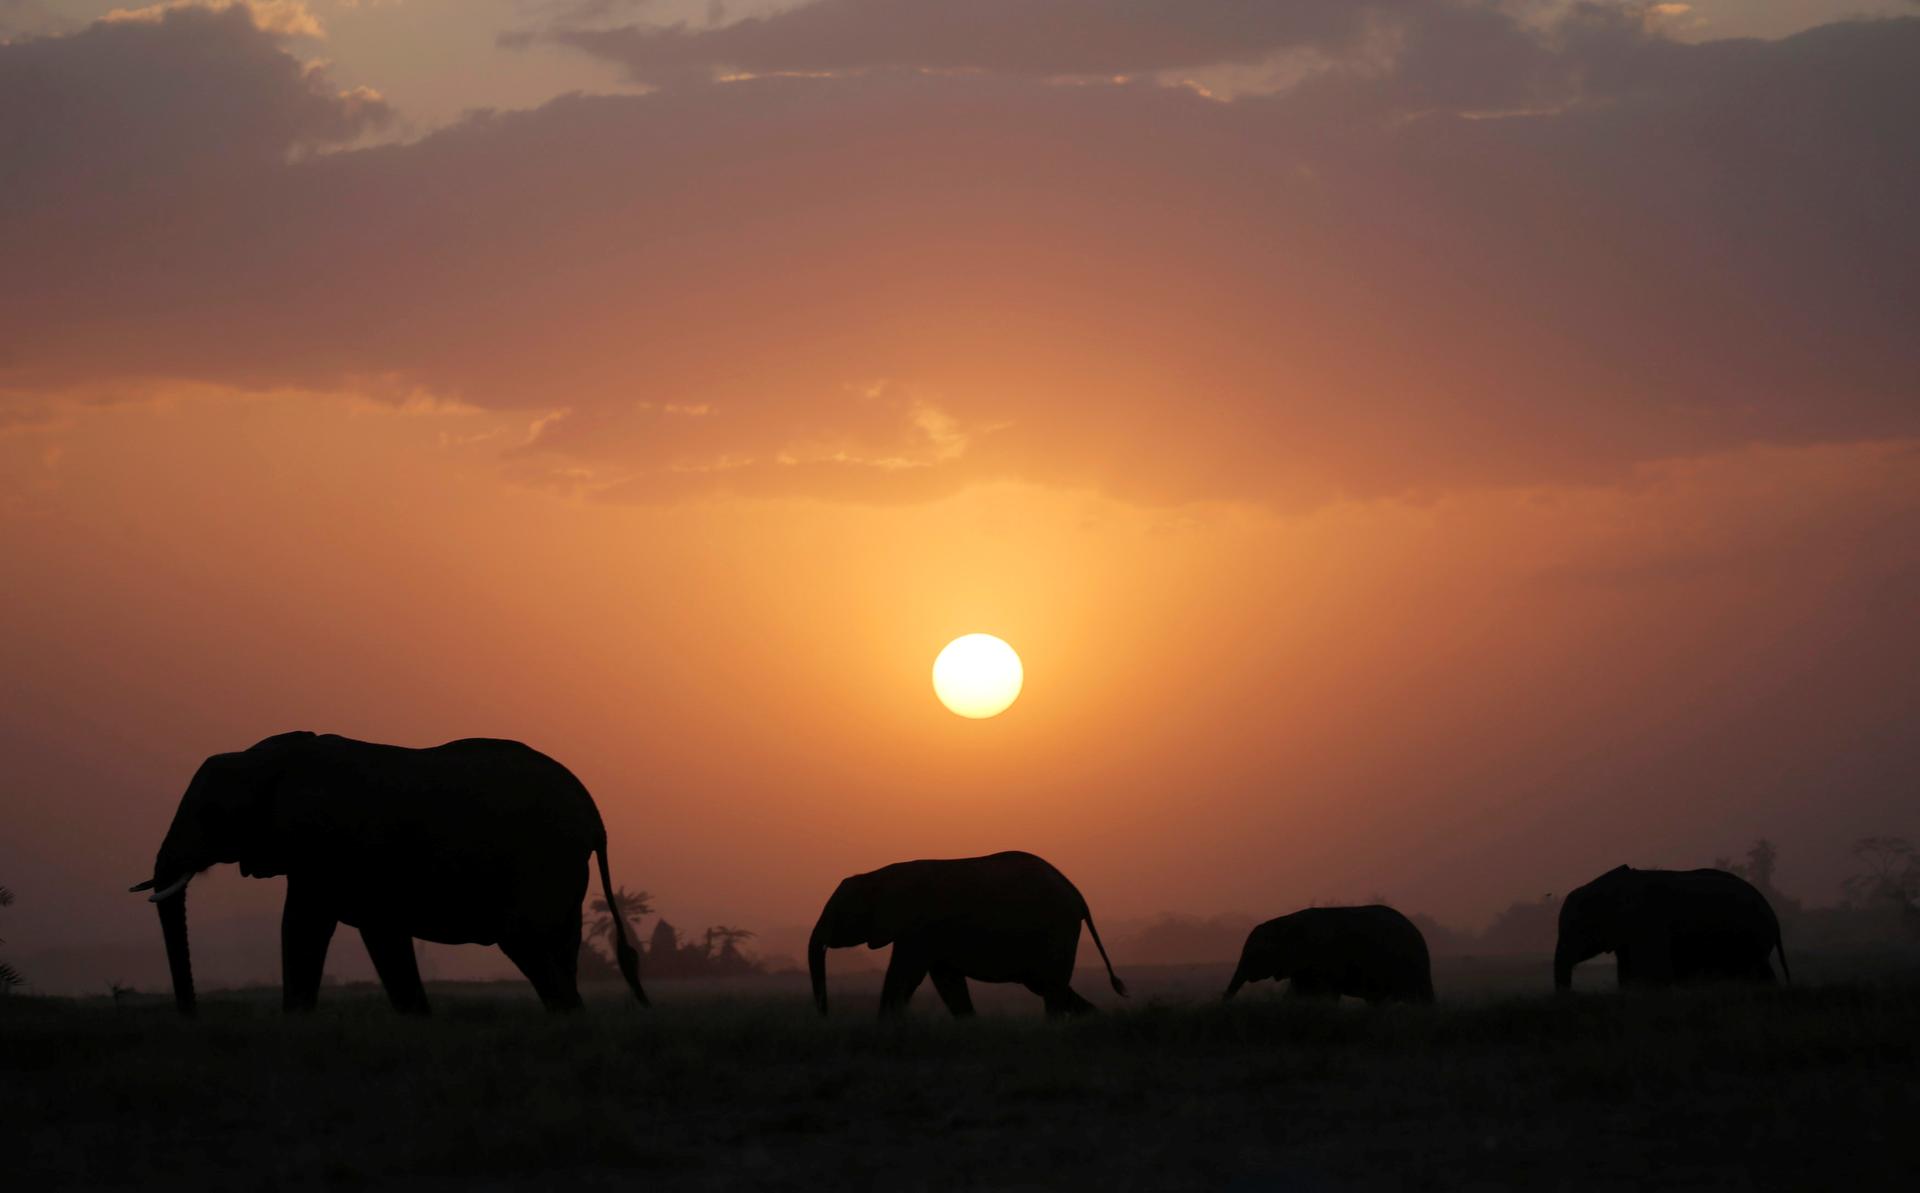 Elephant walk during sunset in Amboseli National Park, Kenya.